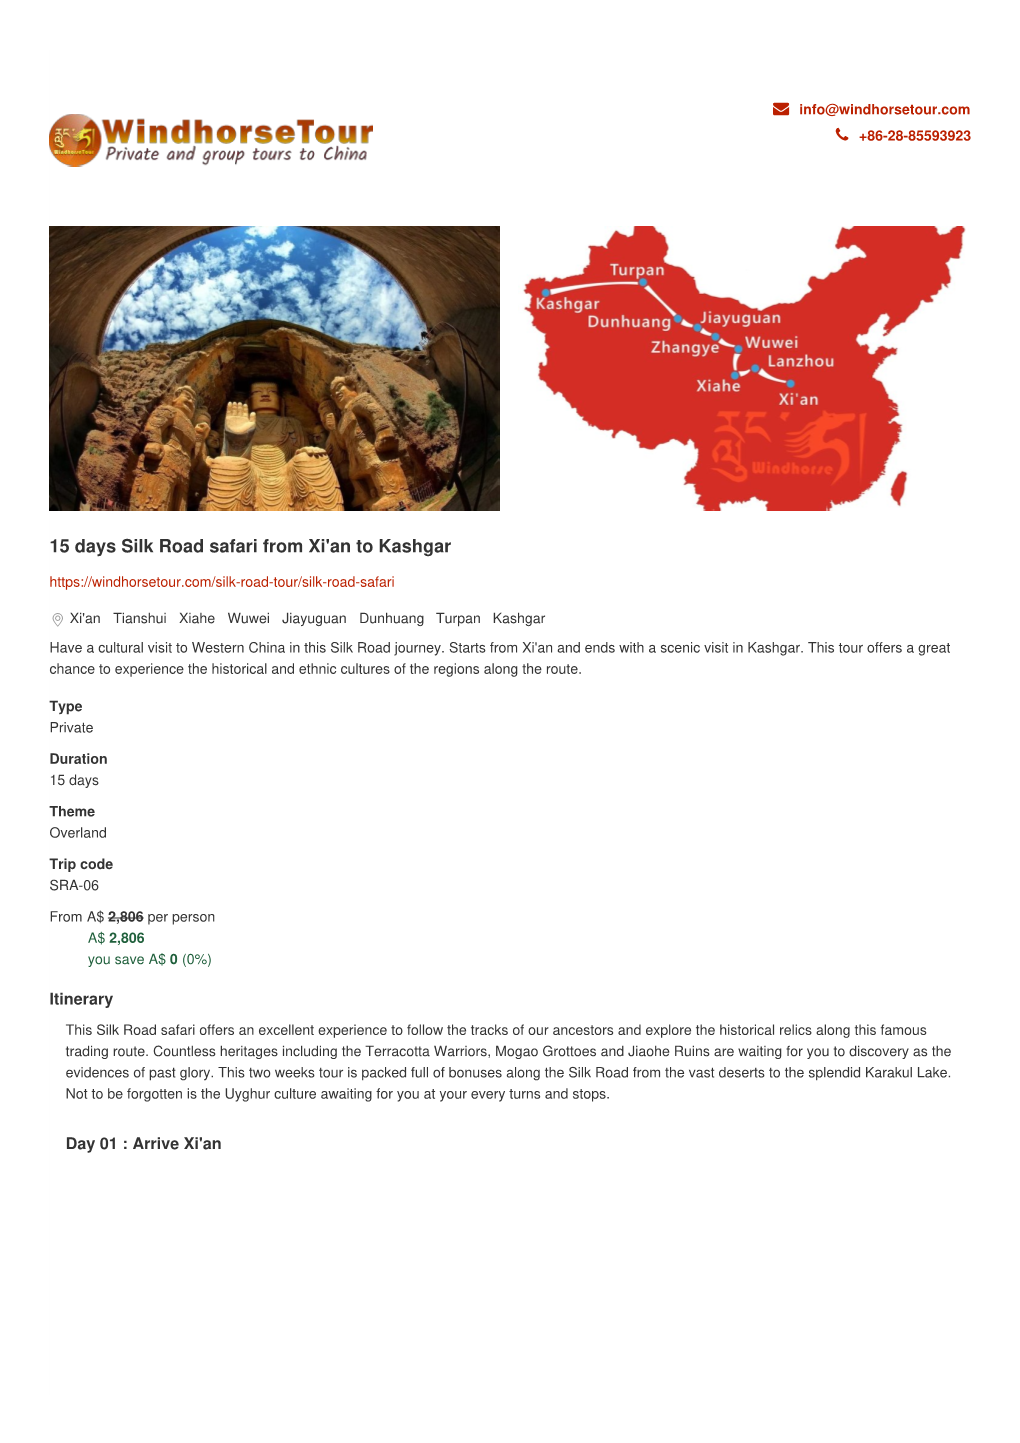 15 Days Silk Road Safari from Xi'an to Kashgar